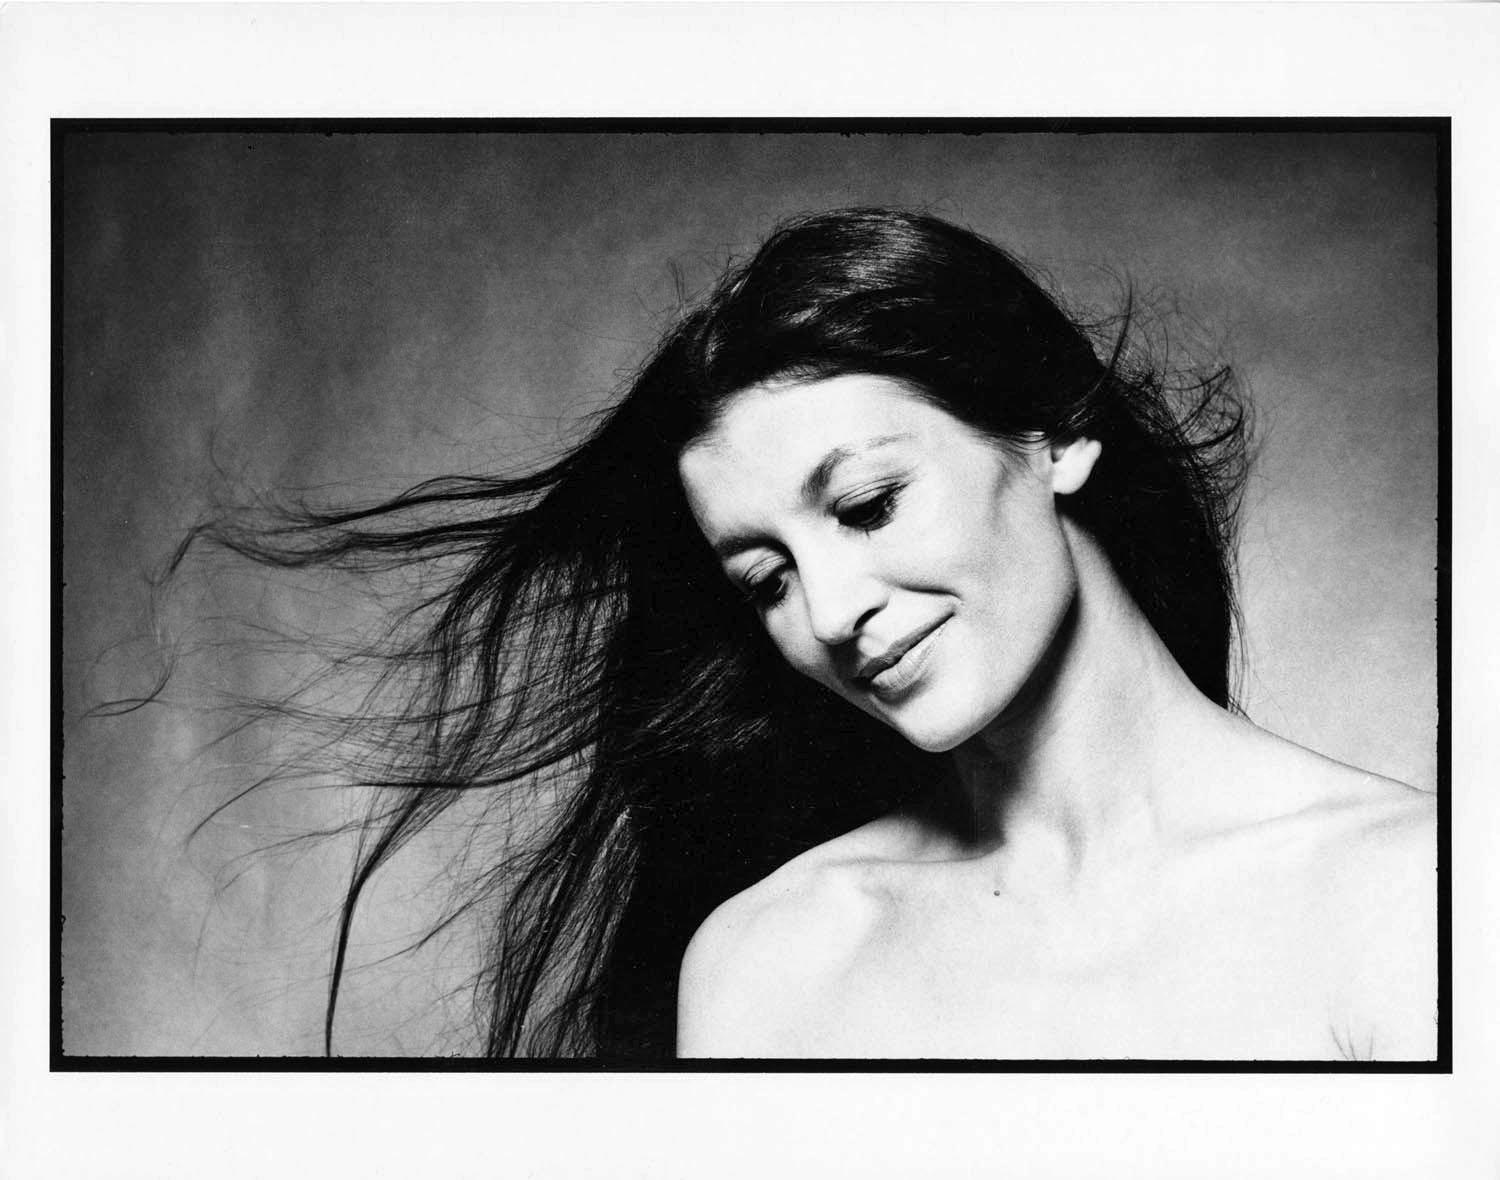 Jack Mitchell Black and White Photograph – Porträtstudie der klassischen Ballerina Carla Fracci